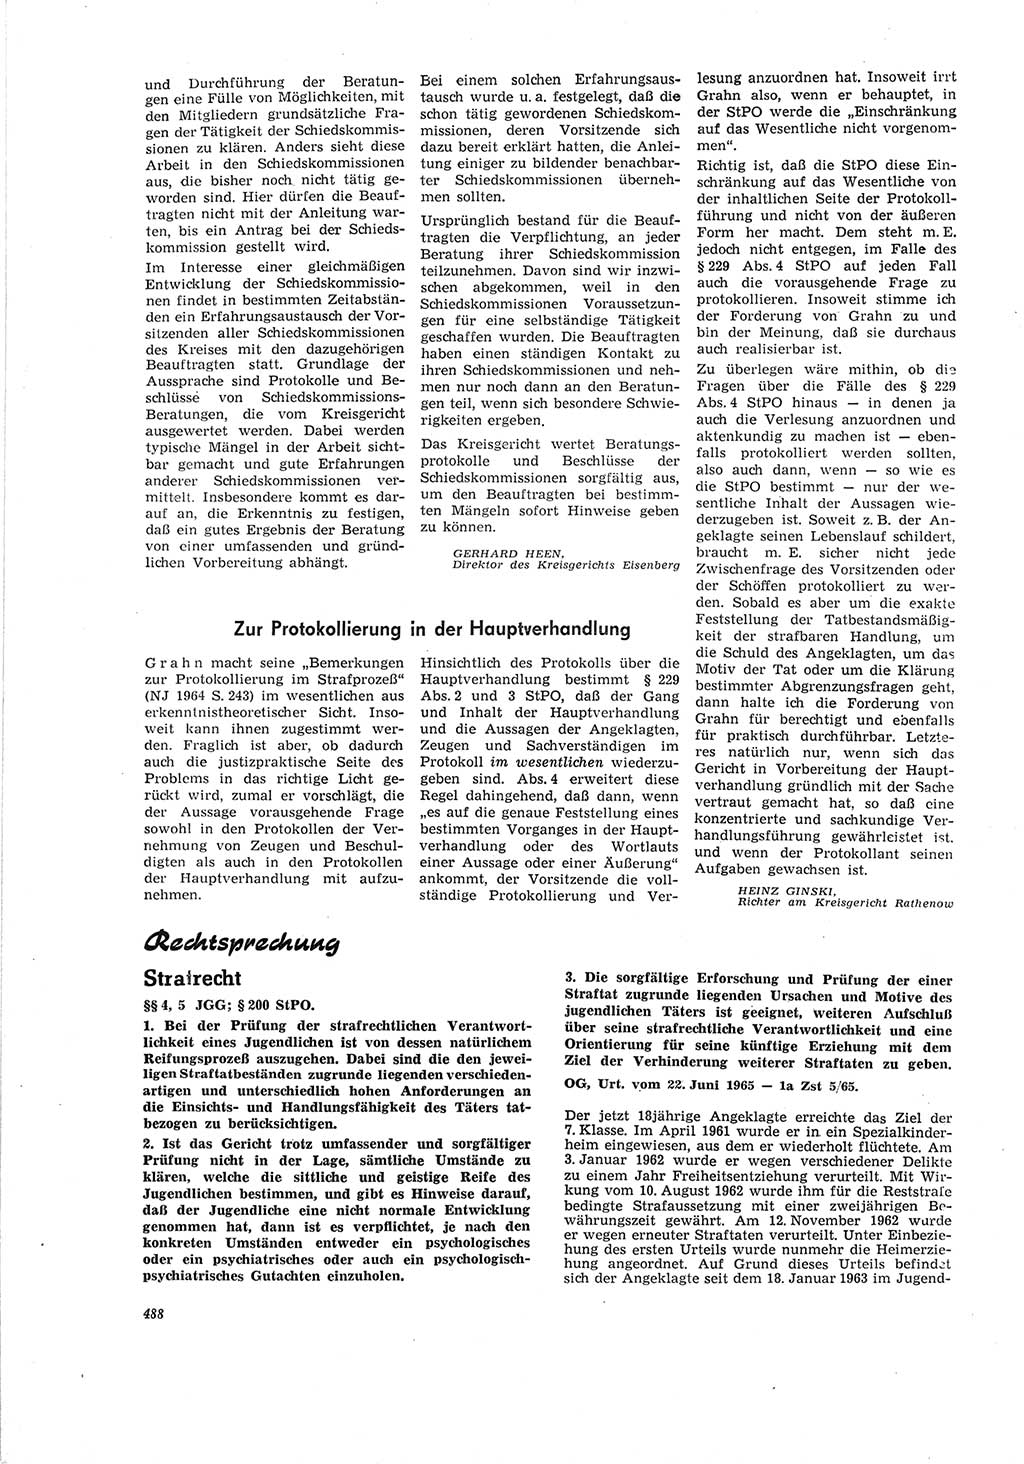 Neue Justiz (NJ), Zeitschrift für Recht und Rechtswissenschaft [Deutsche Demokratische Republik (DDR)], 19. Jahrgang 1965, Seite 488 (NJ DDR 1965, S. 488)